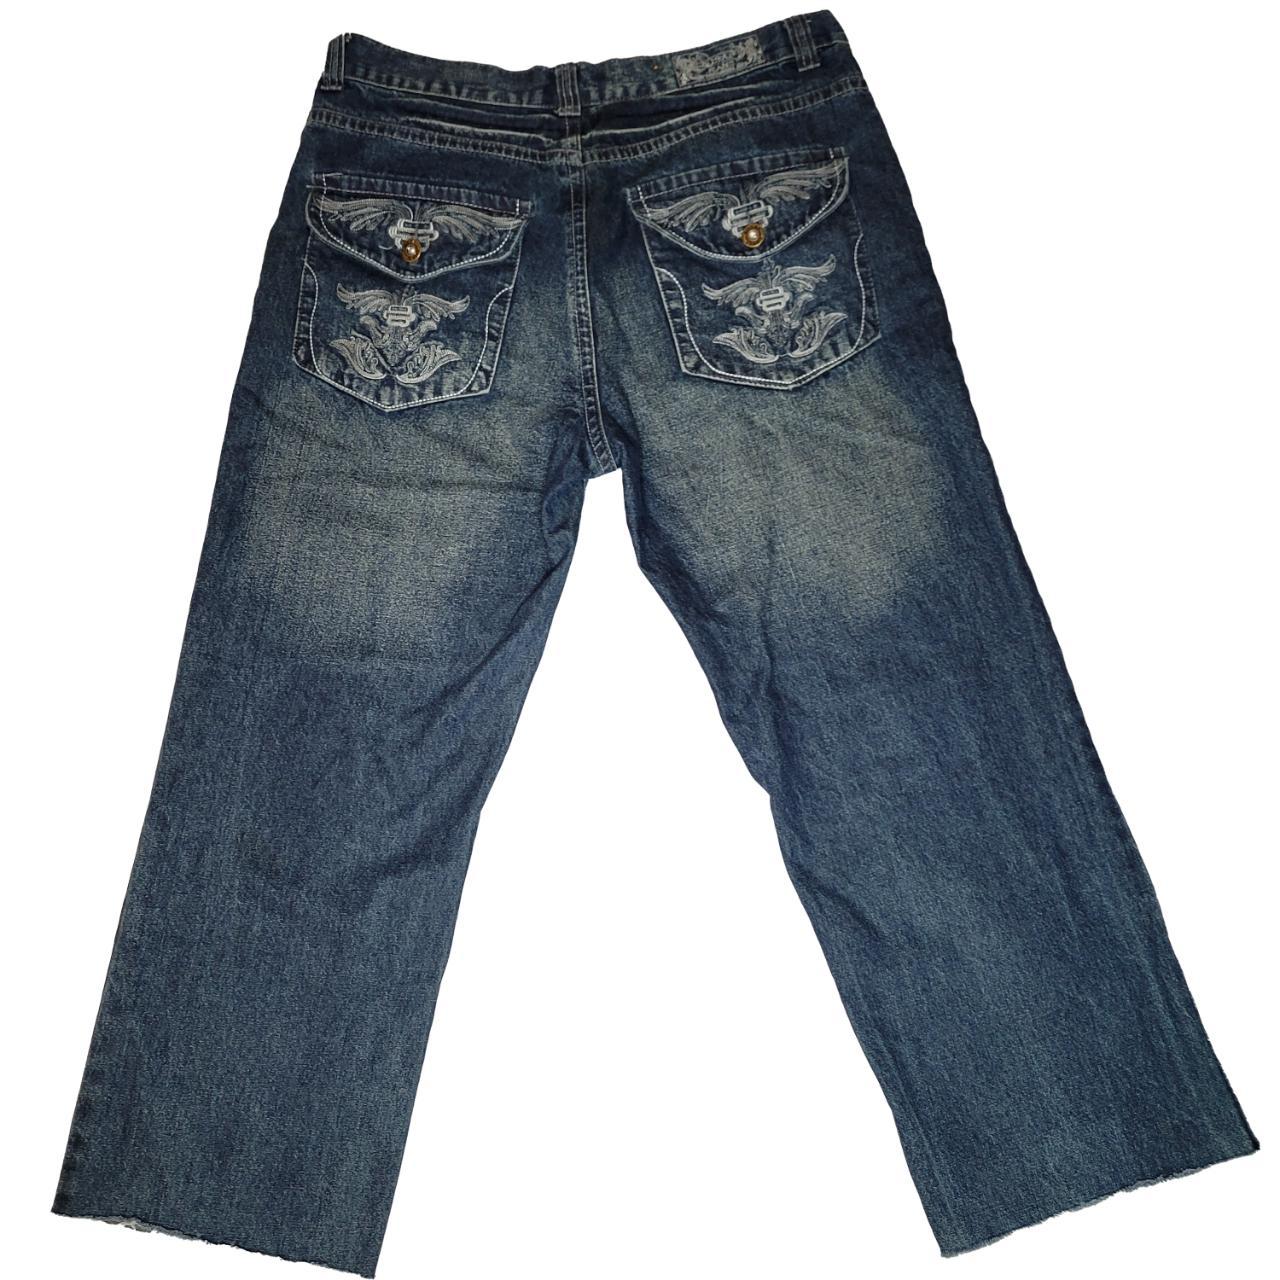 38x34 F.U.S.A.I. Jeans - Depop